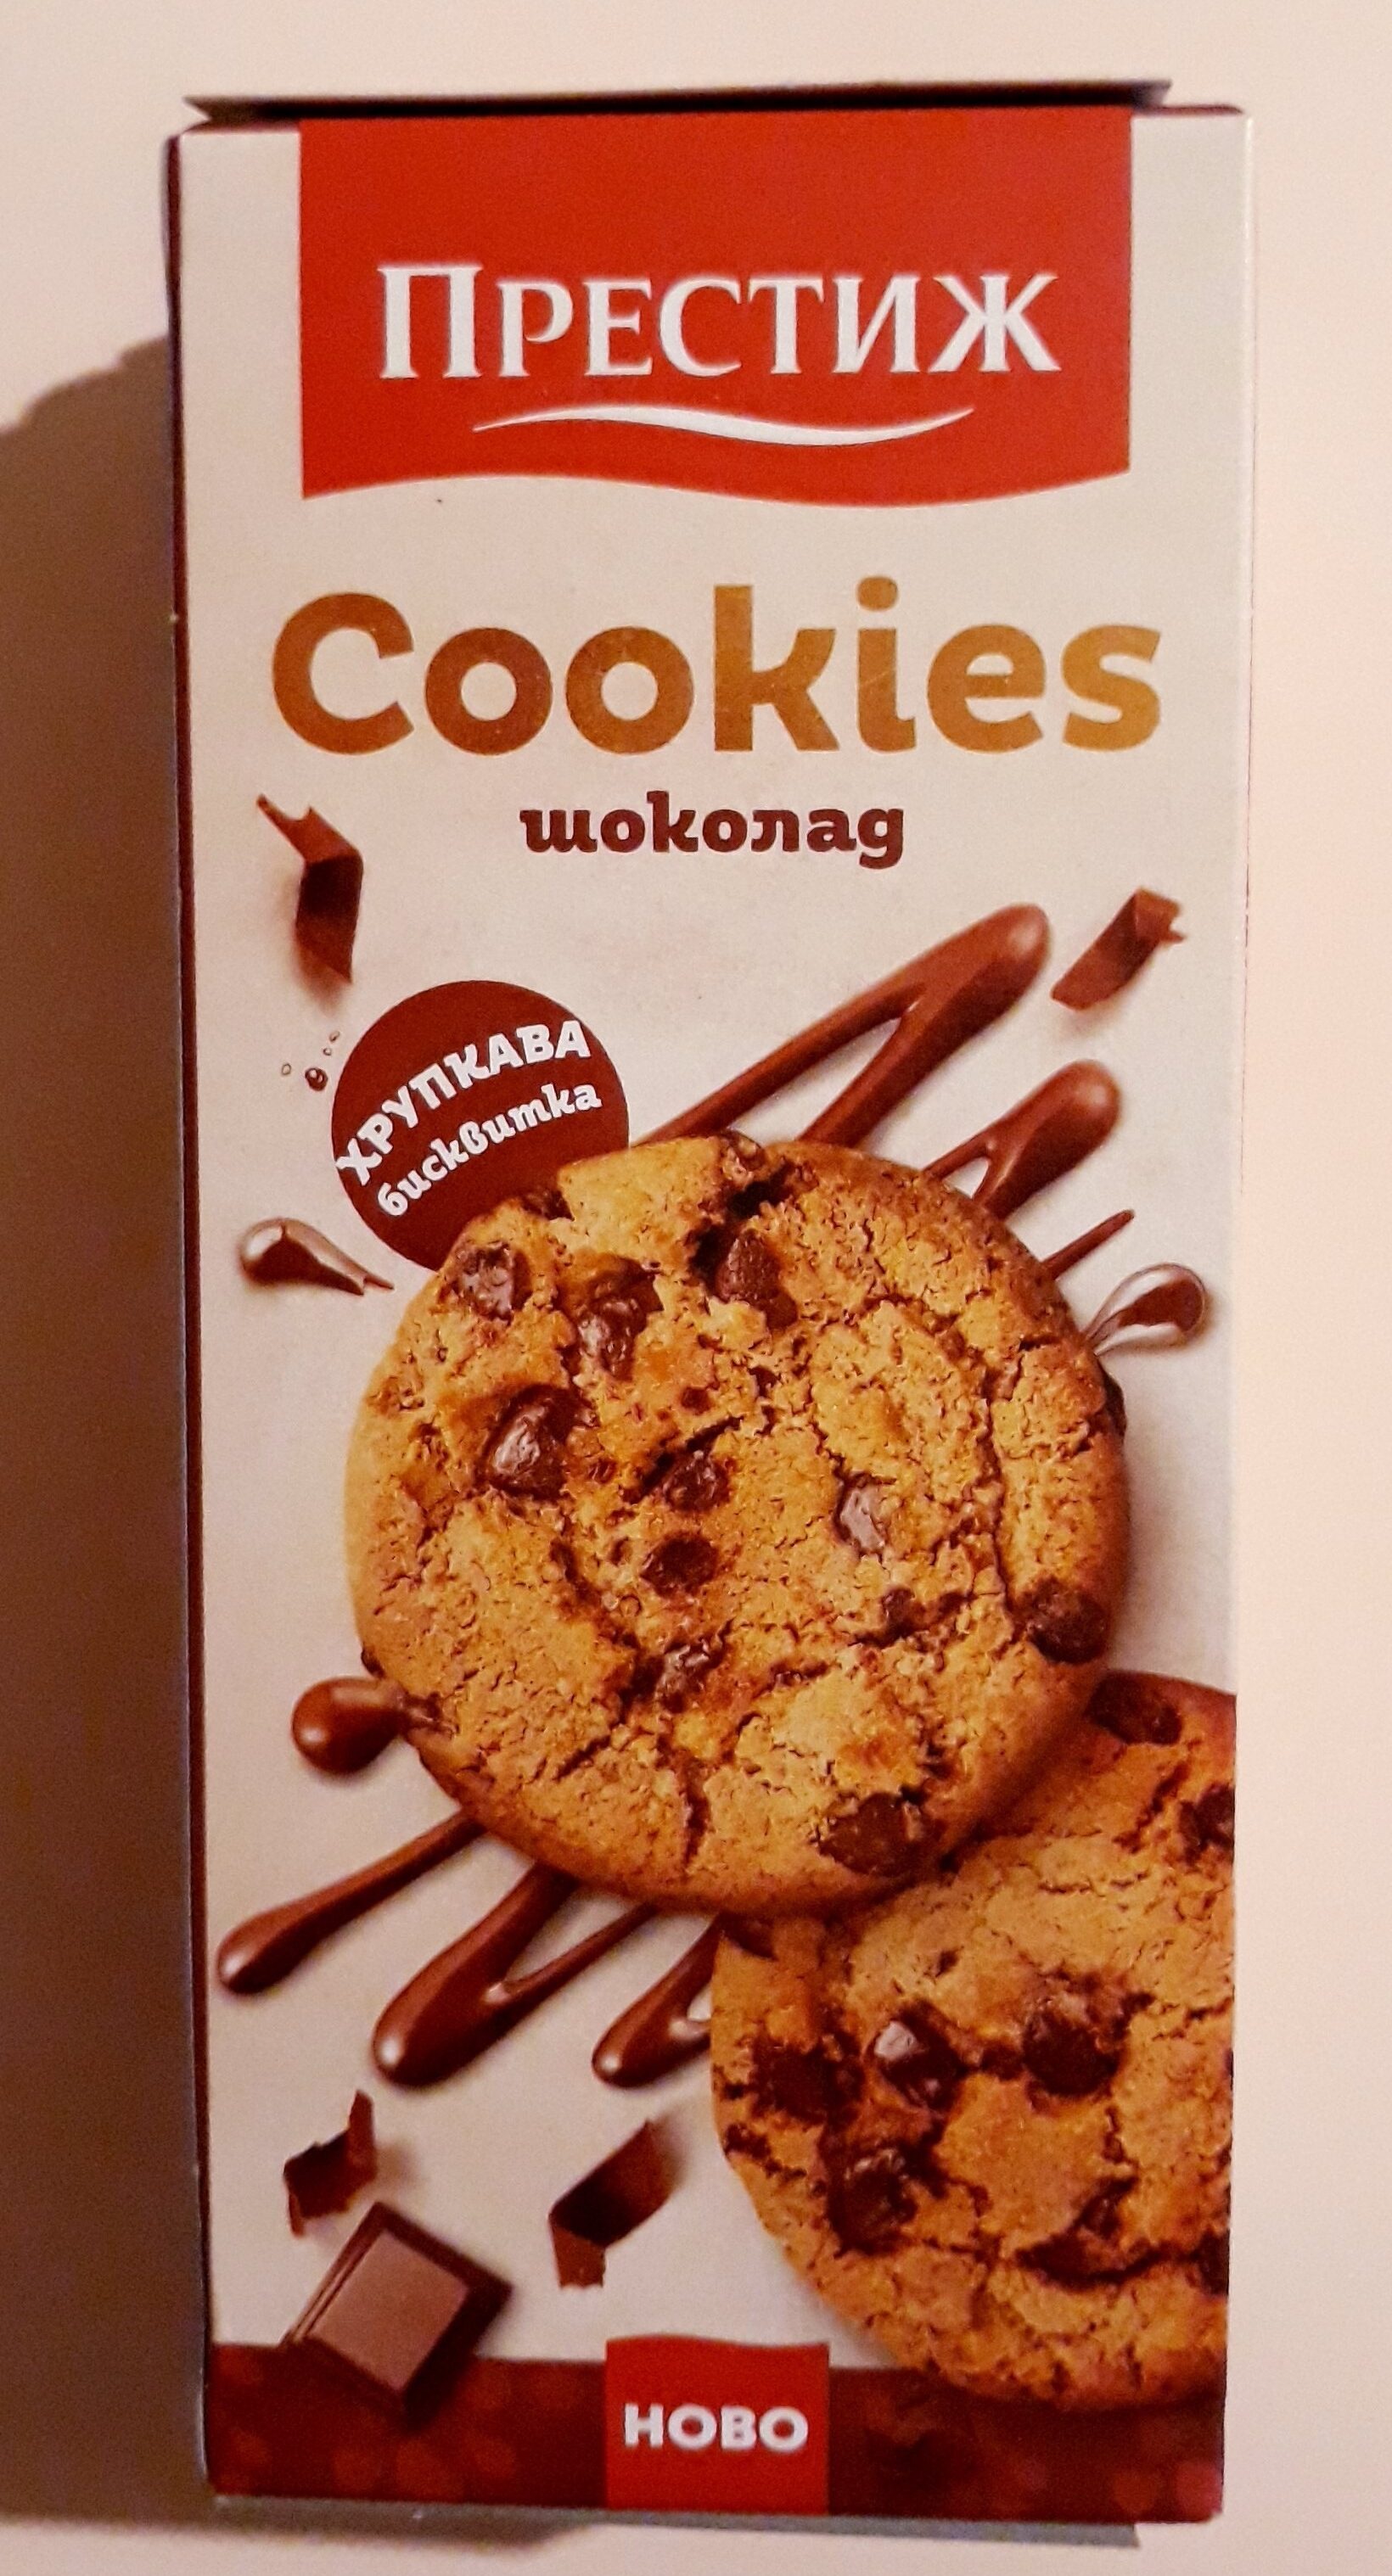 ПРЕСТИЖ Cookies Шоколад - Producto - bg